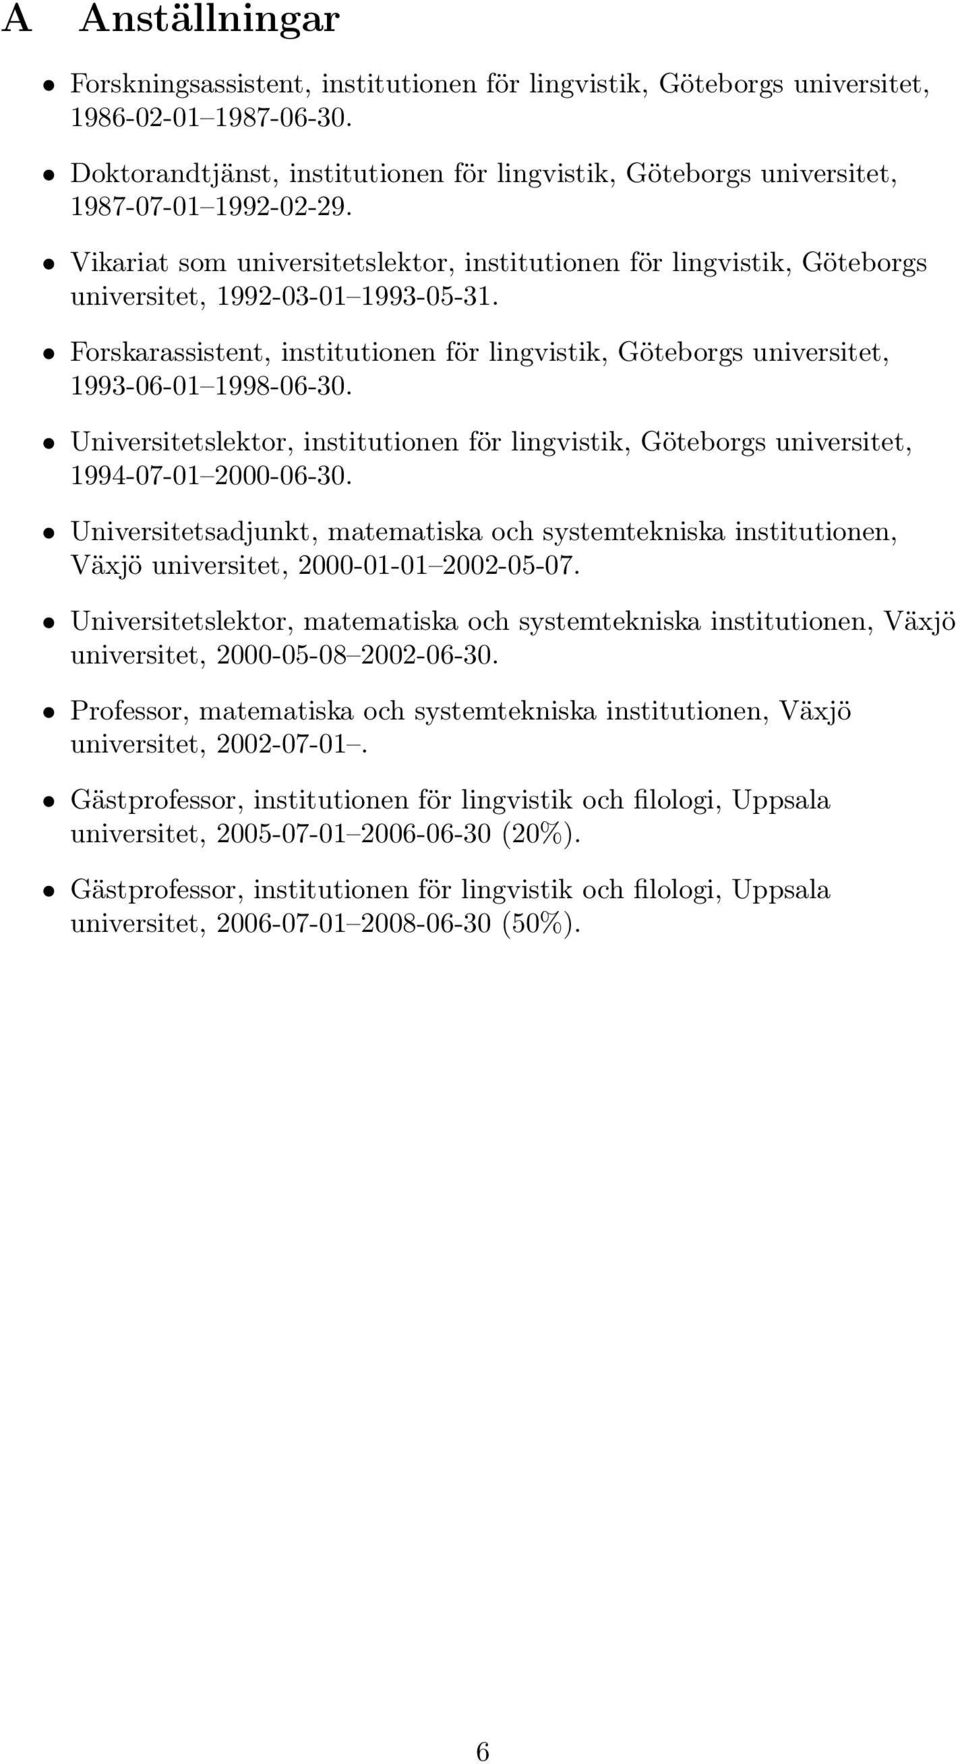 Vikariat som universitetslektor, institutionen för lingvistik, Göteborgs universitet, 1992-03-01 1993-05-31.